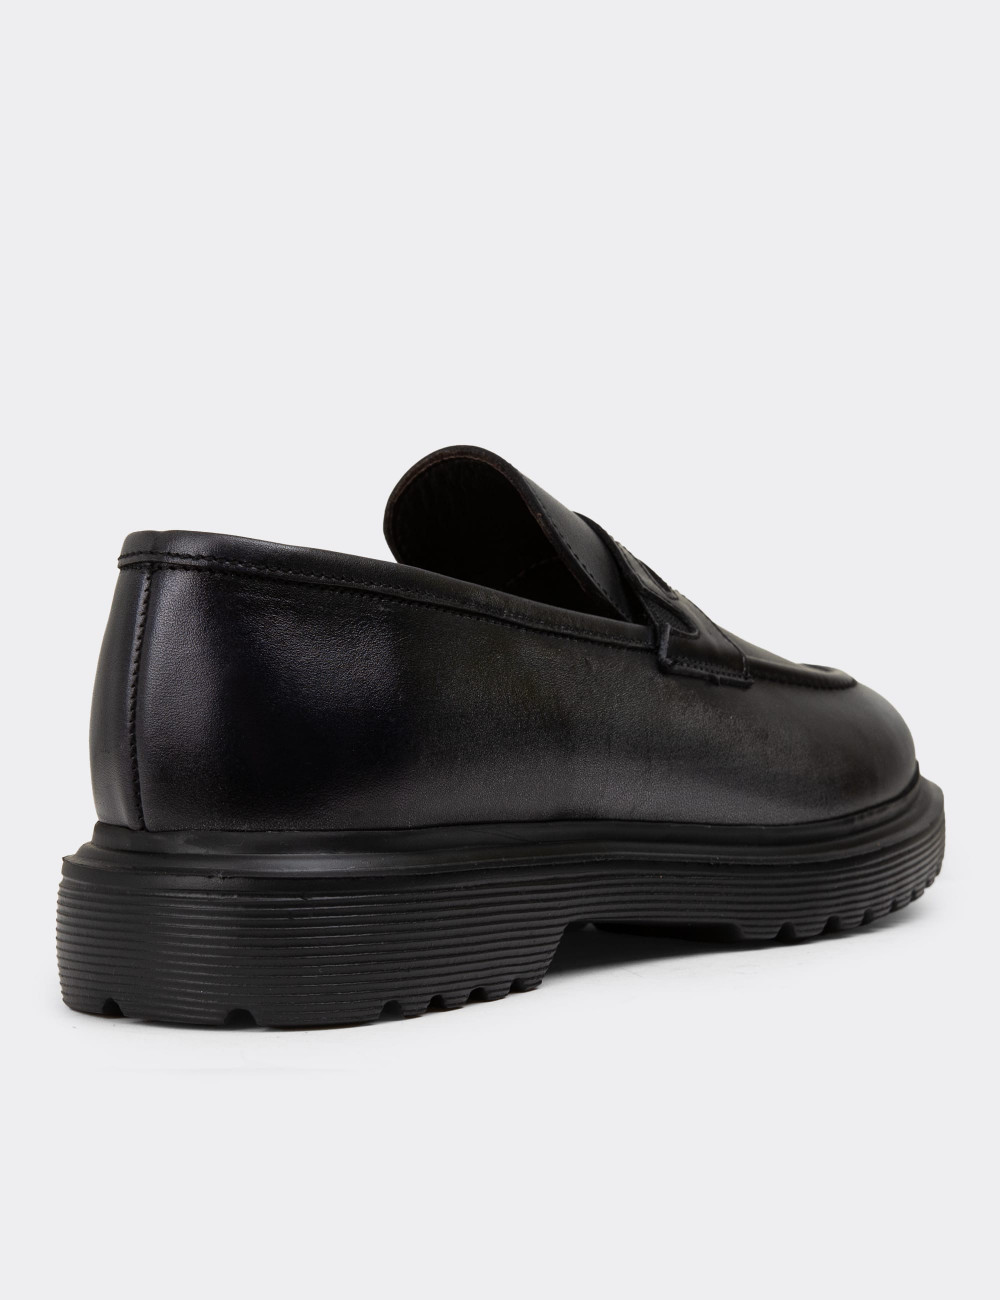 Hakiki Deri Vintage Gri Erkek Loafer Ayakkabı - 01878MGRIE01